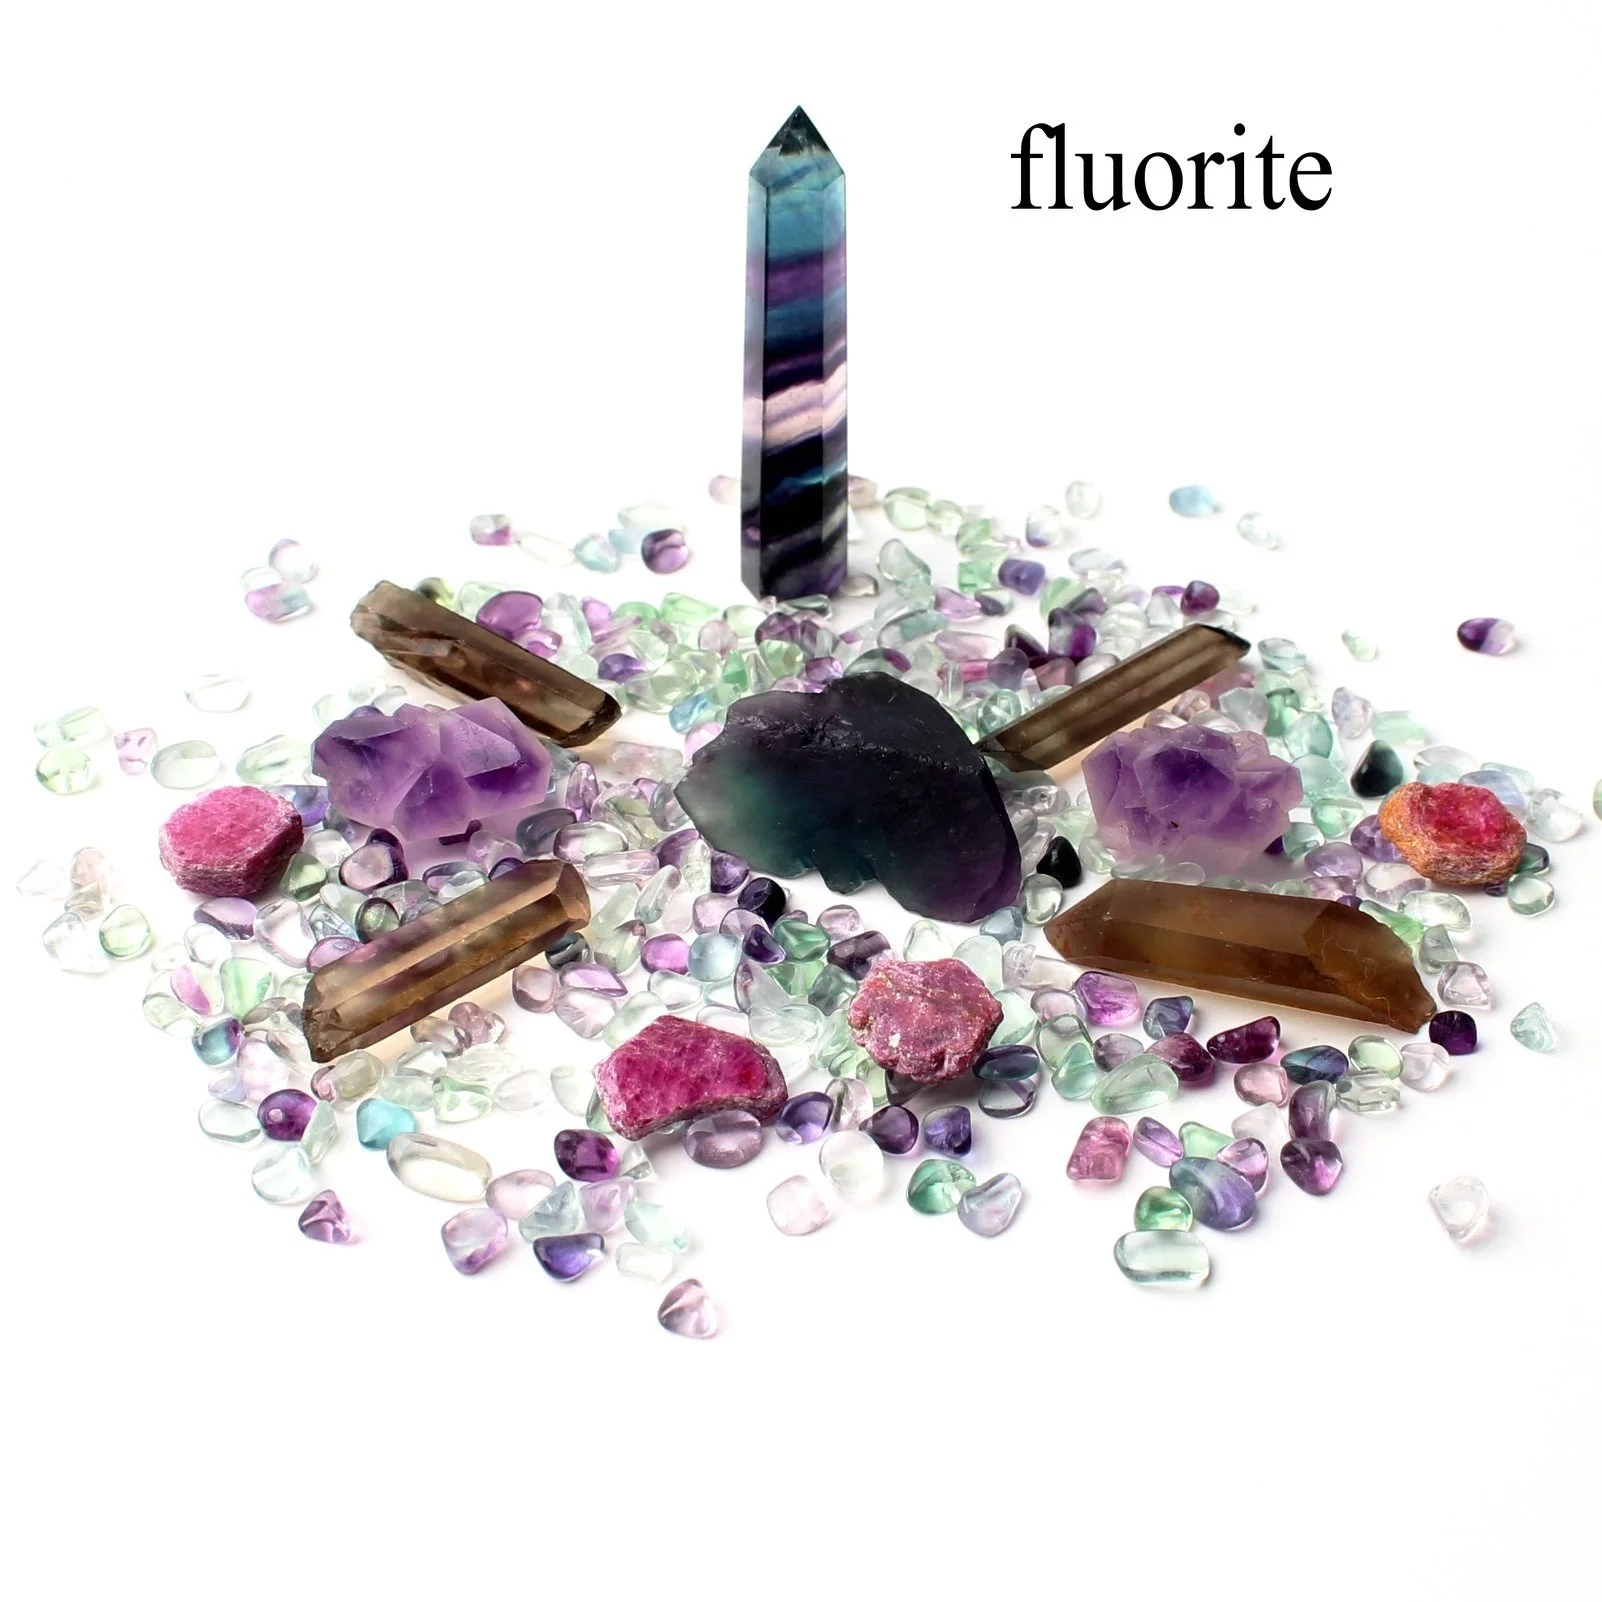 Смешанный натуральный прозрачный кристалл палочка обелиска гравий кварц образец минерала рокстоун красочные чакра камень Reikihealing домашний декор - Цвет: Fluorite